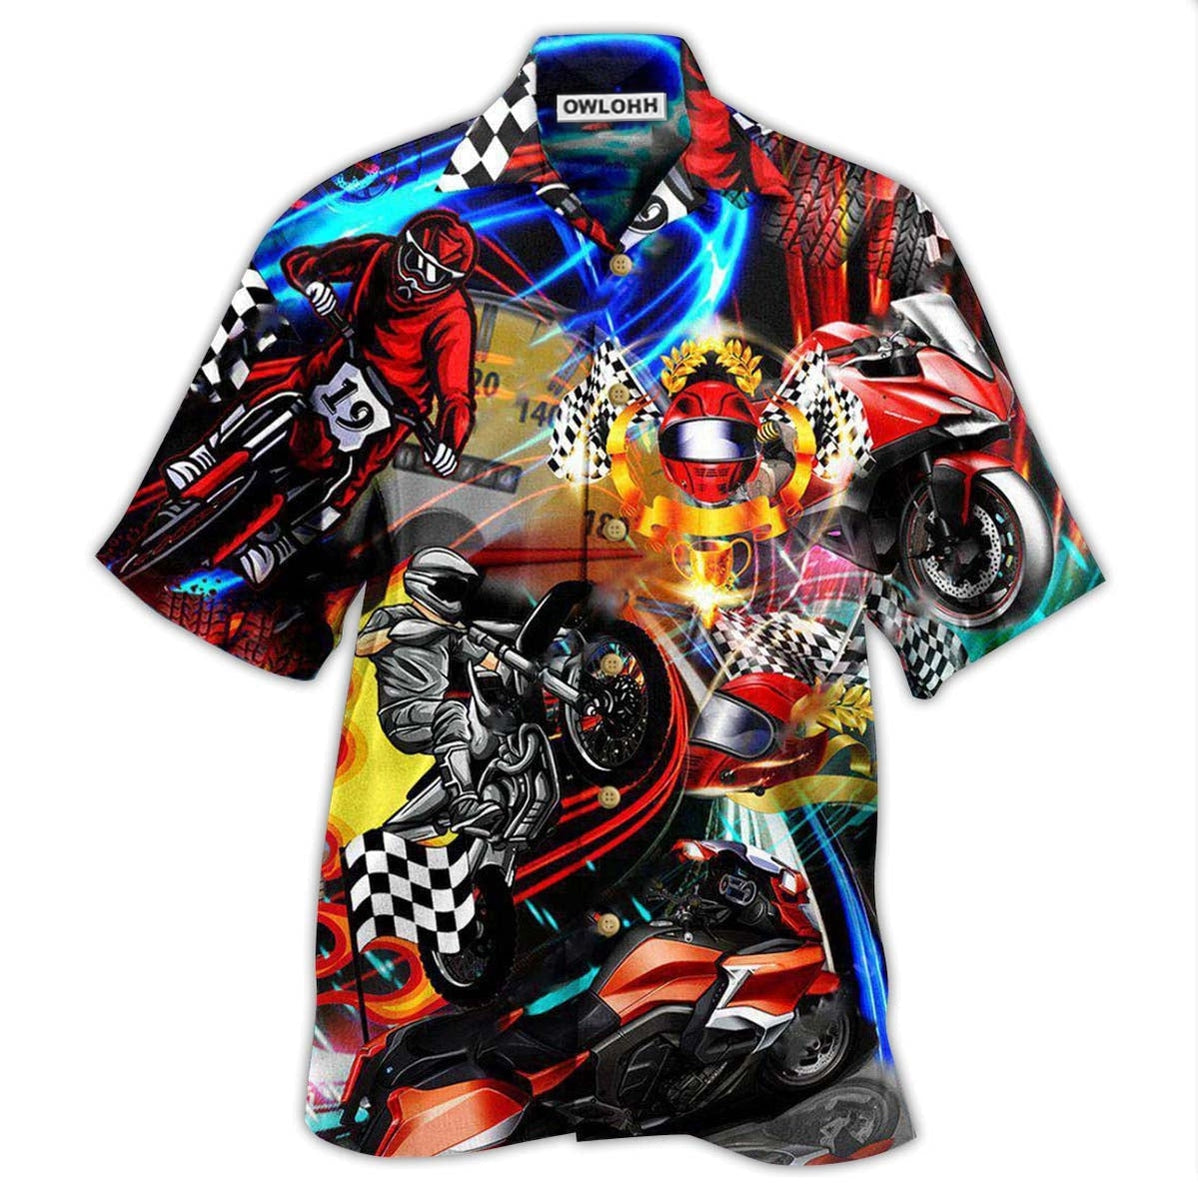 Hawaiian Shirt / Adults / S Motorcycle Race The Rain Ride The Wind - Hawaiian Shirt - Owls Matrix LTD